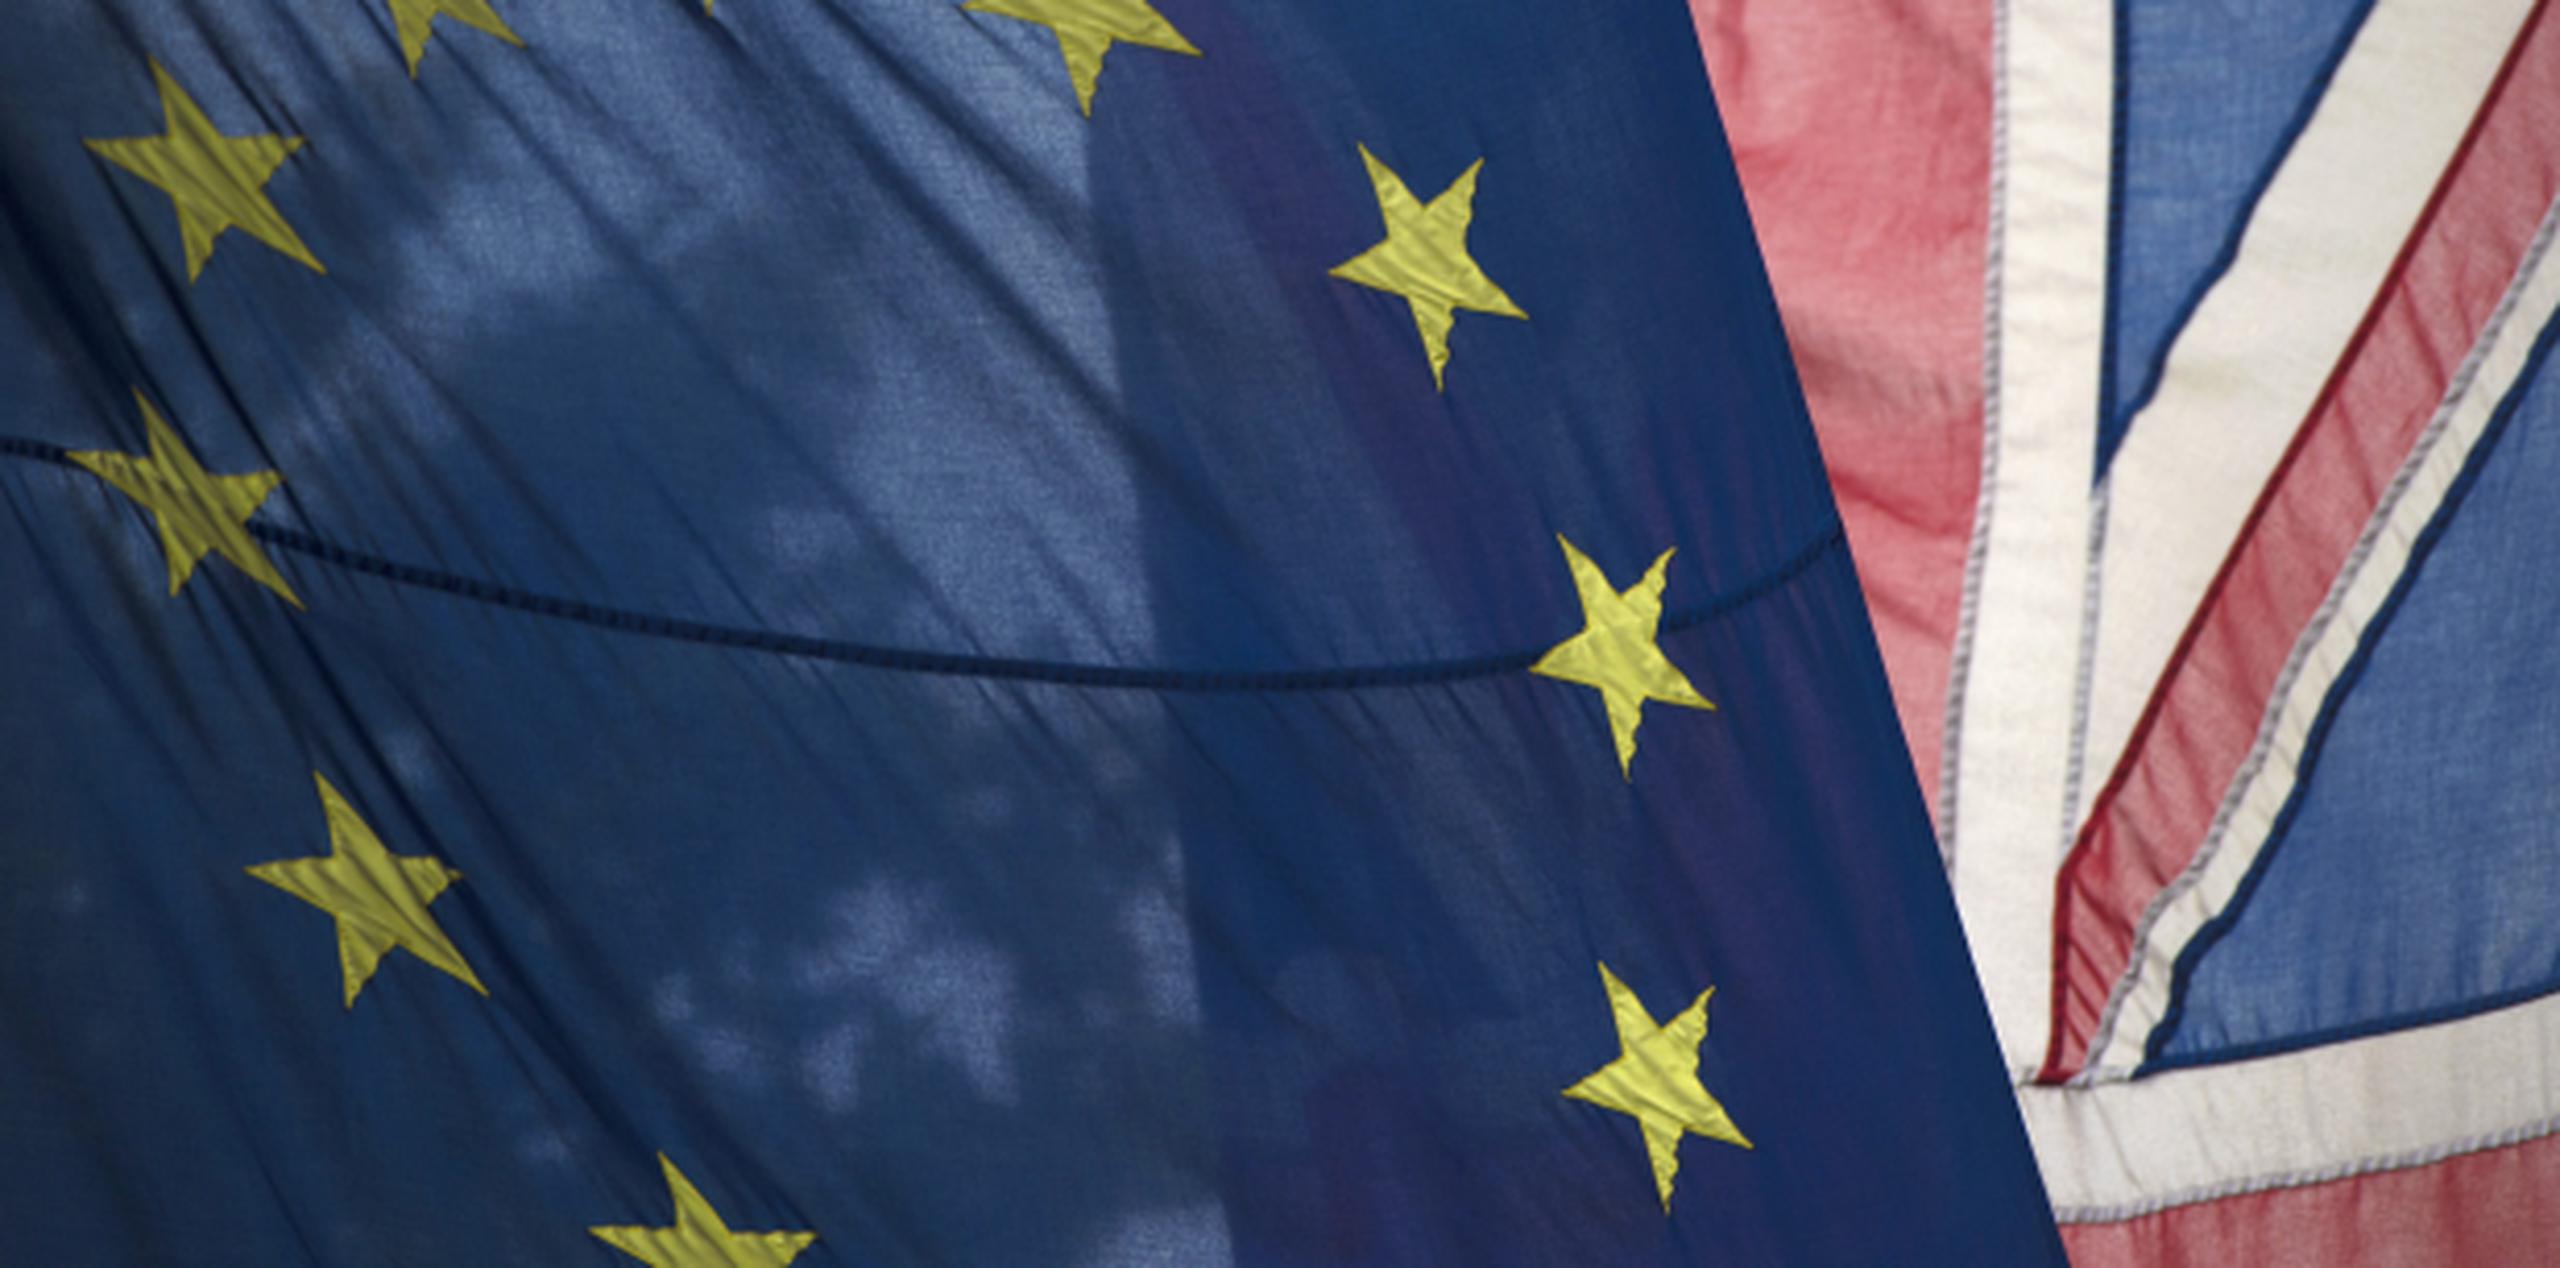 El Reino Unido votó a favor de abandonar la Unión Europea en el referéndun celebrado el pasado jueves. (EFE/Hannah Mckay)
